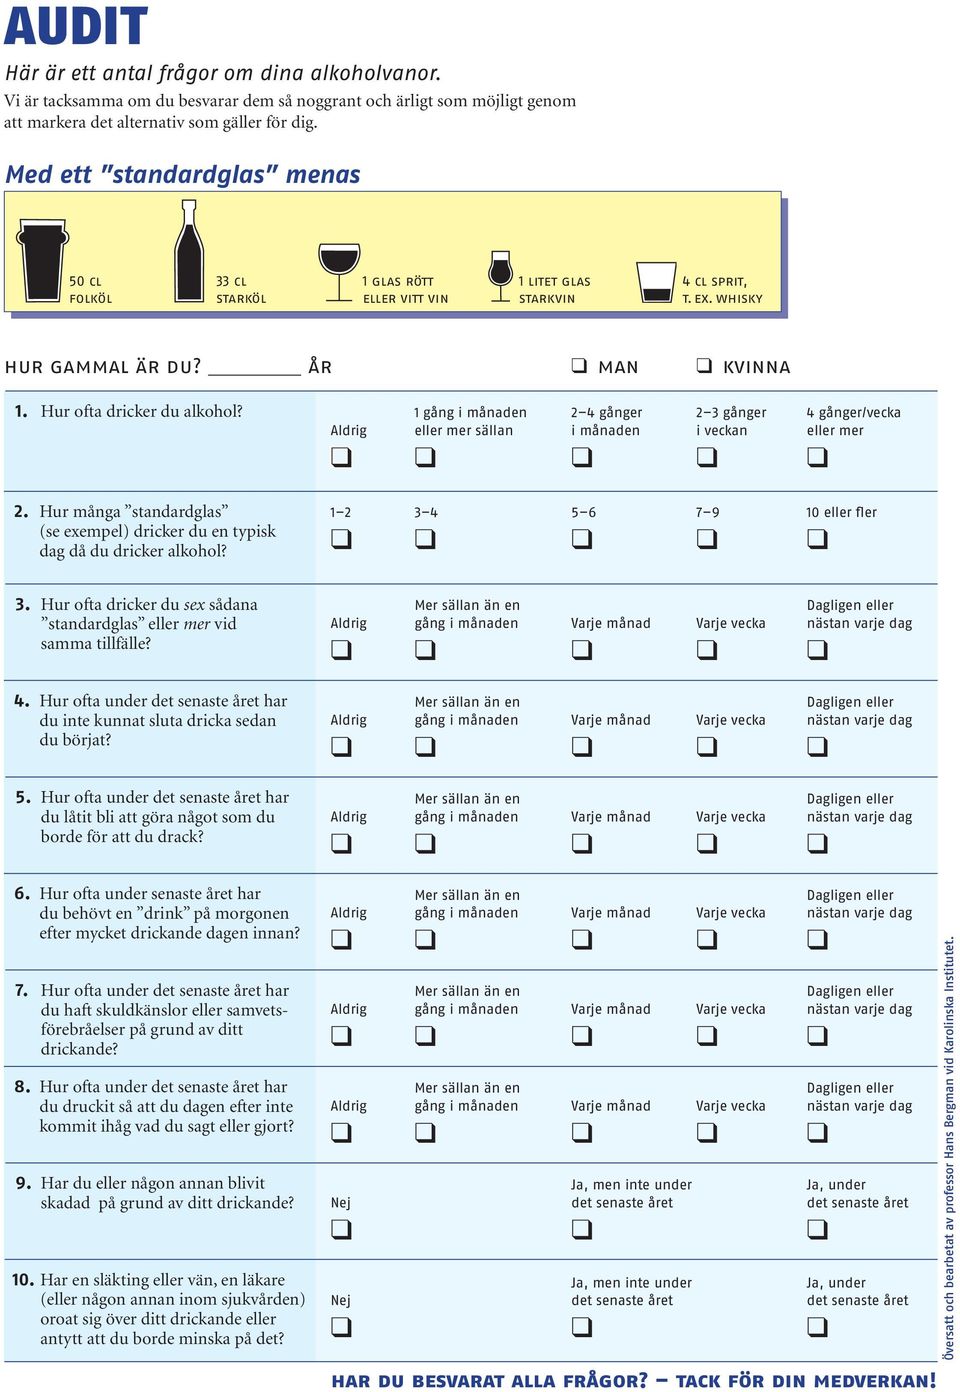 Hur många standardglas (se exempel) dricker du en typisk dag då du dricker alkohol?